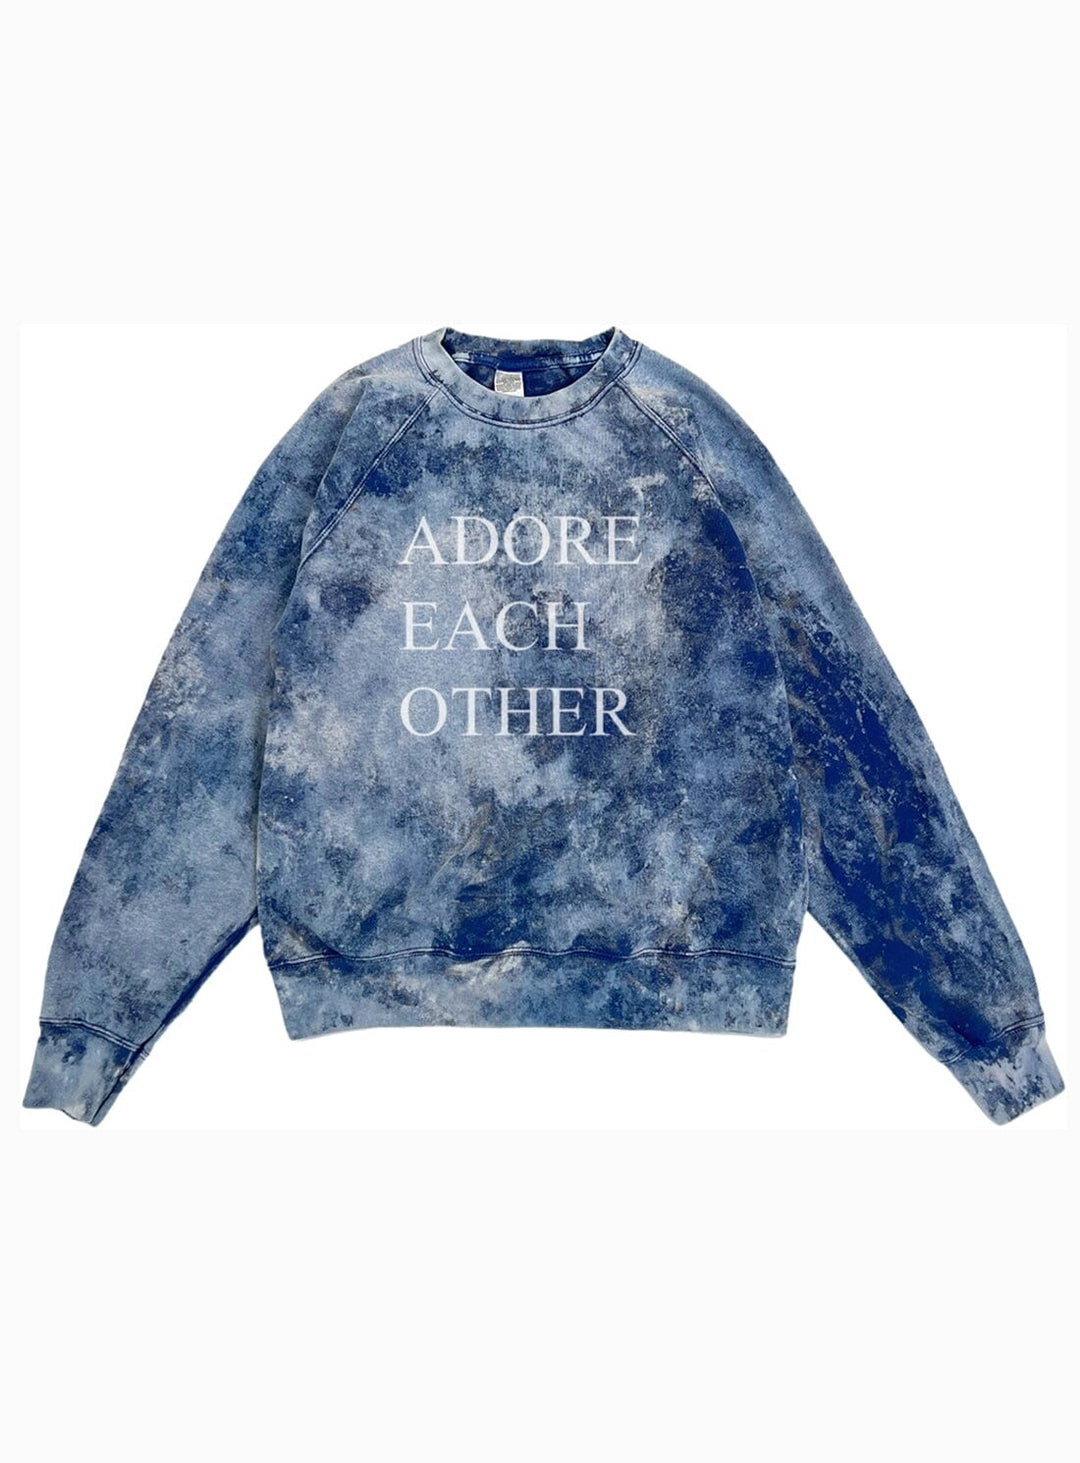 Adore Each Other Sweatshirt Jumper YBDFinds 